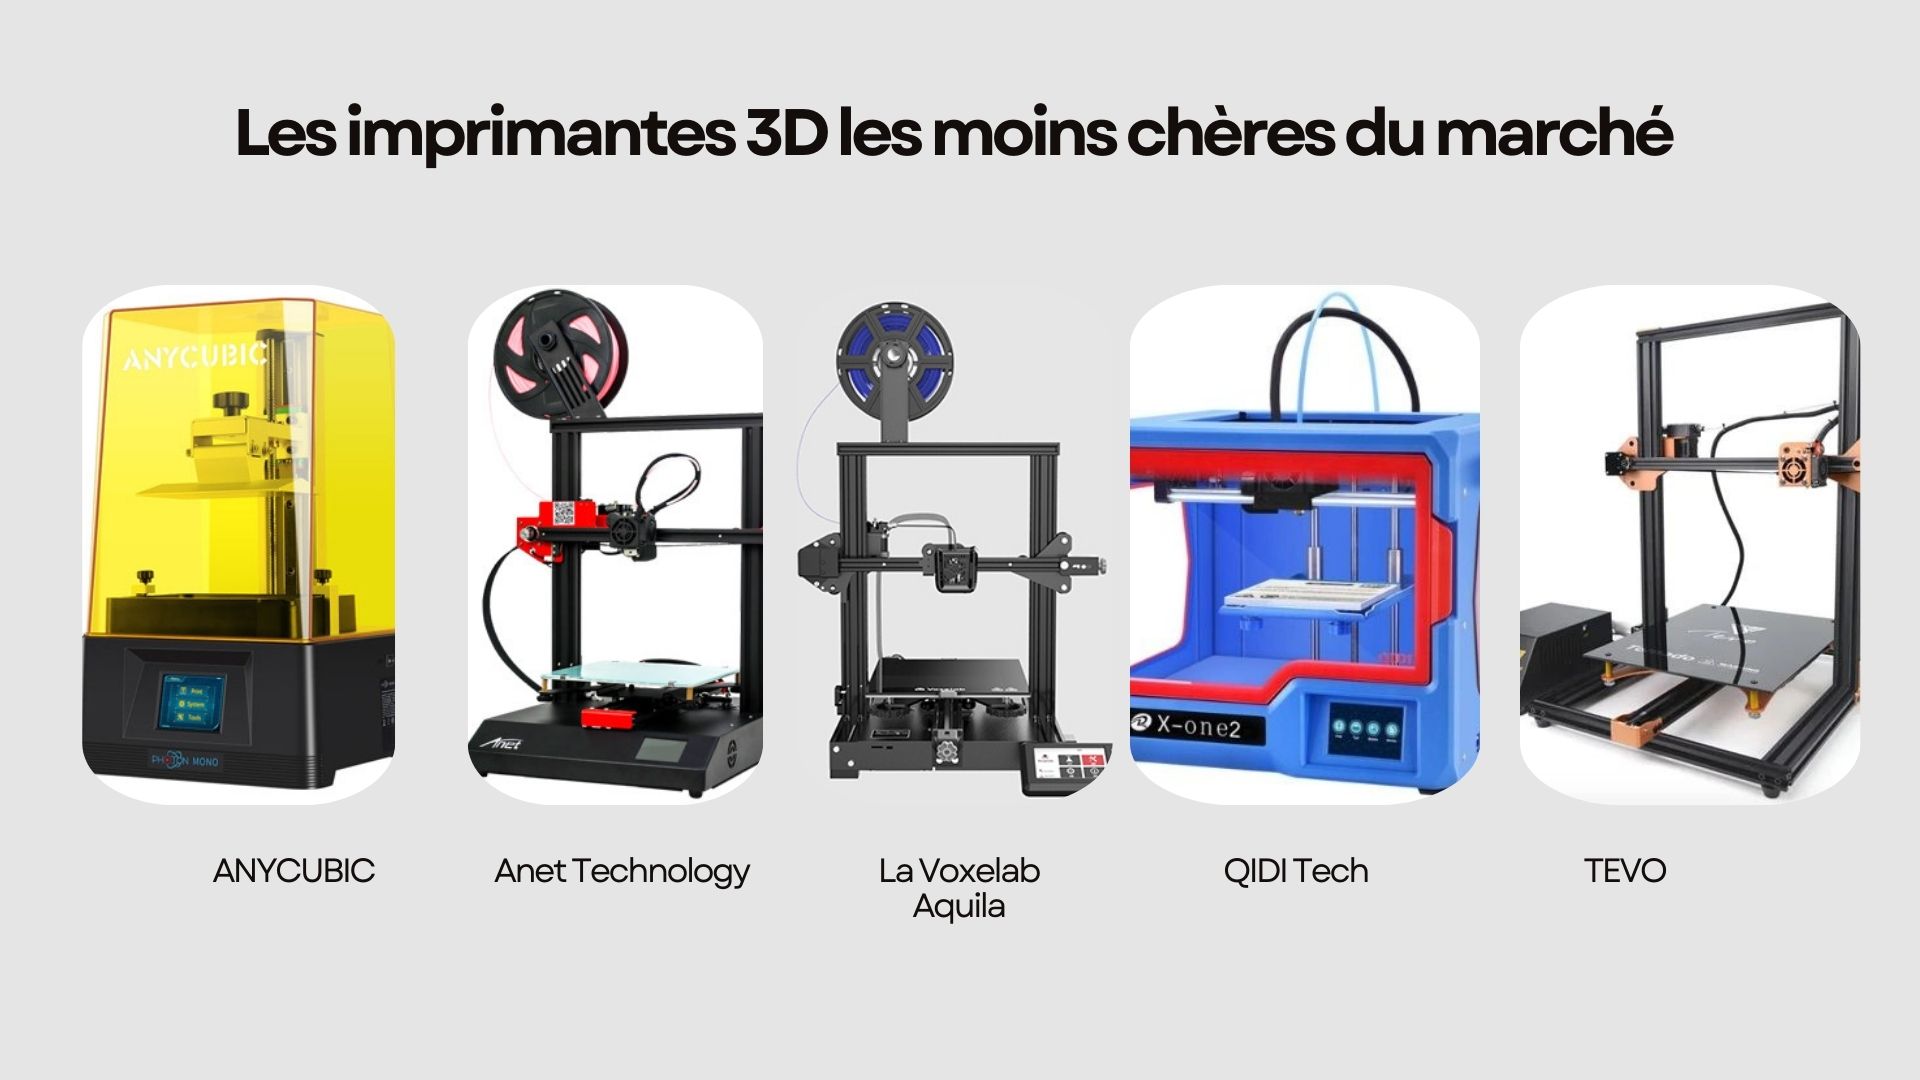 Les imprimantes 3D les moins chères du marché